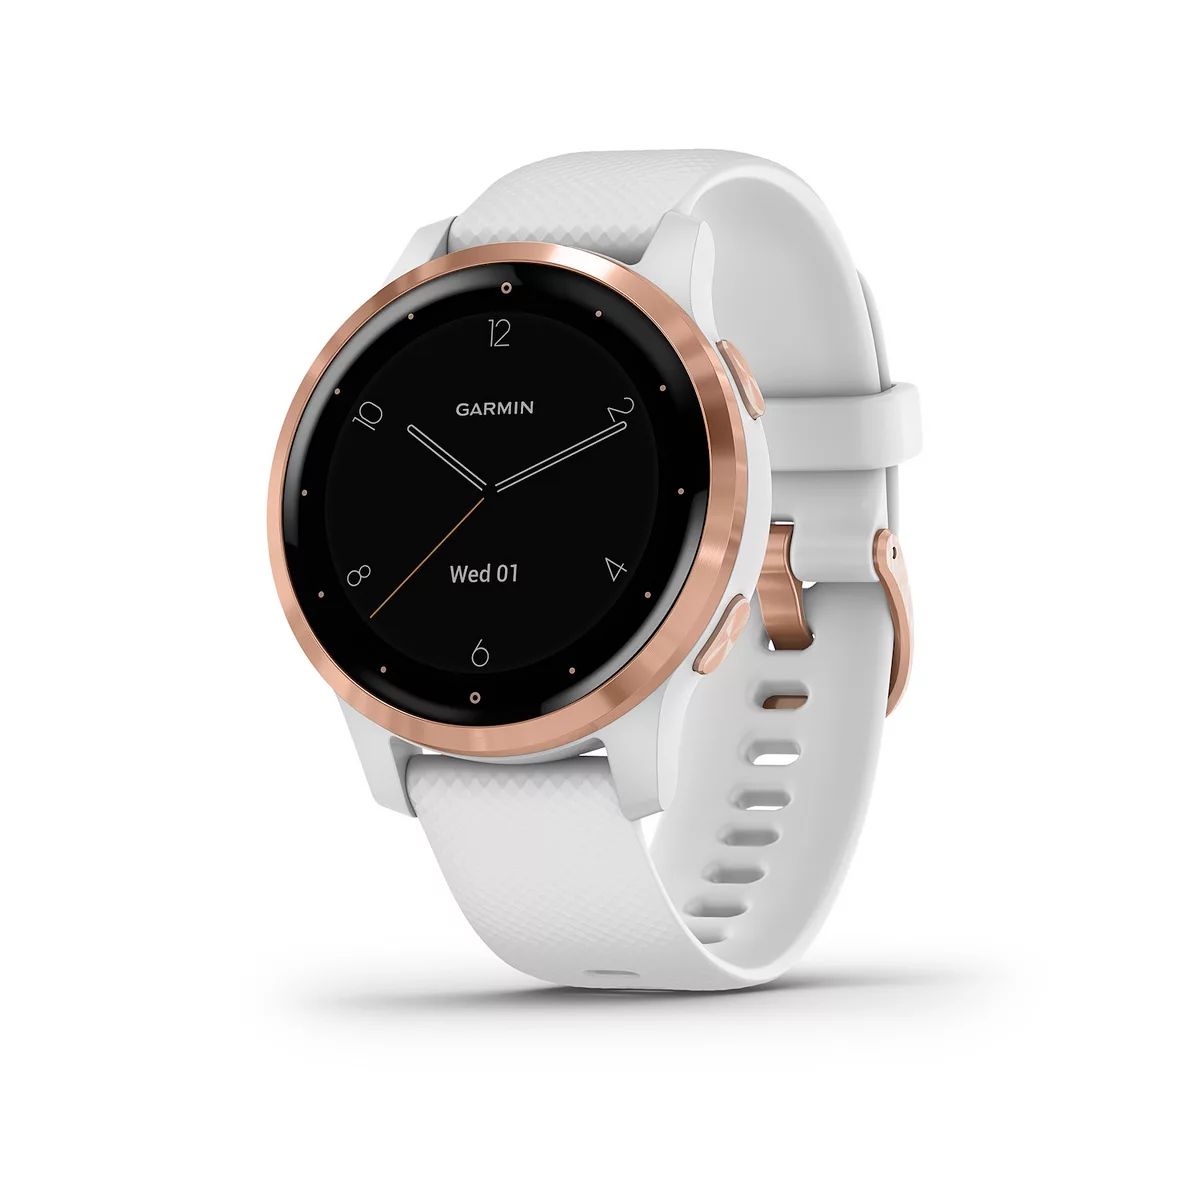 Garmin vivoactive 4S Smartwatch | Kohl's